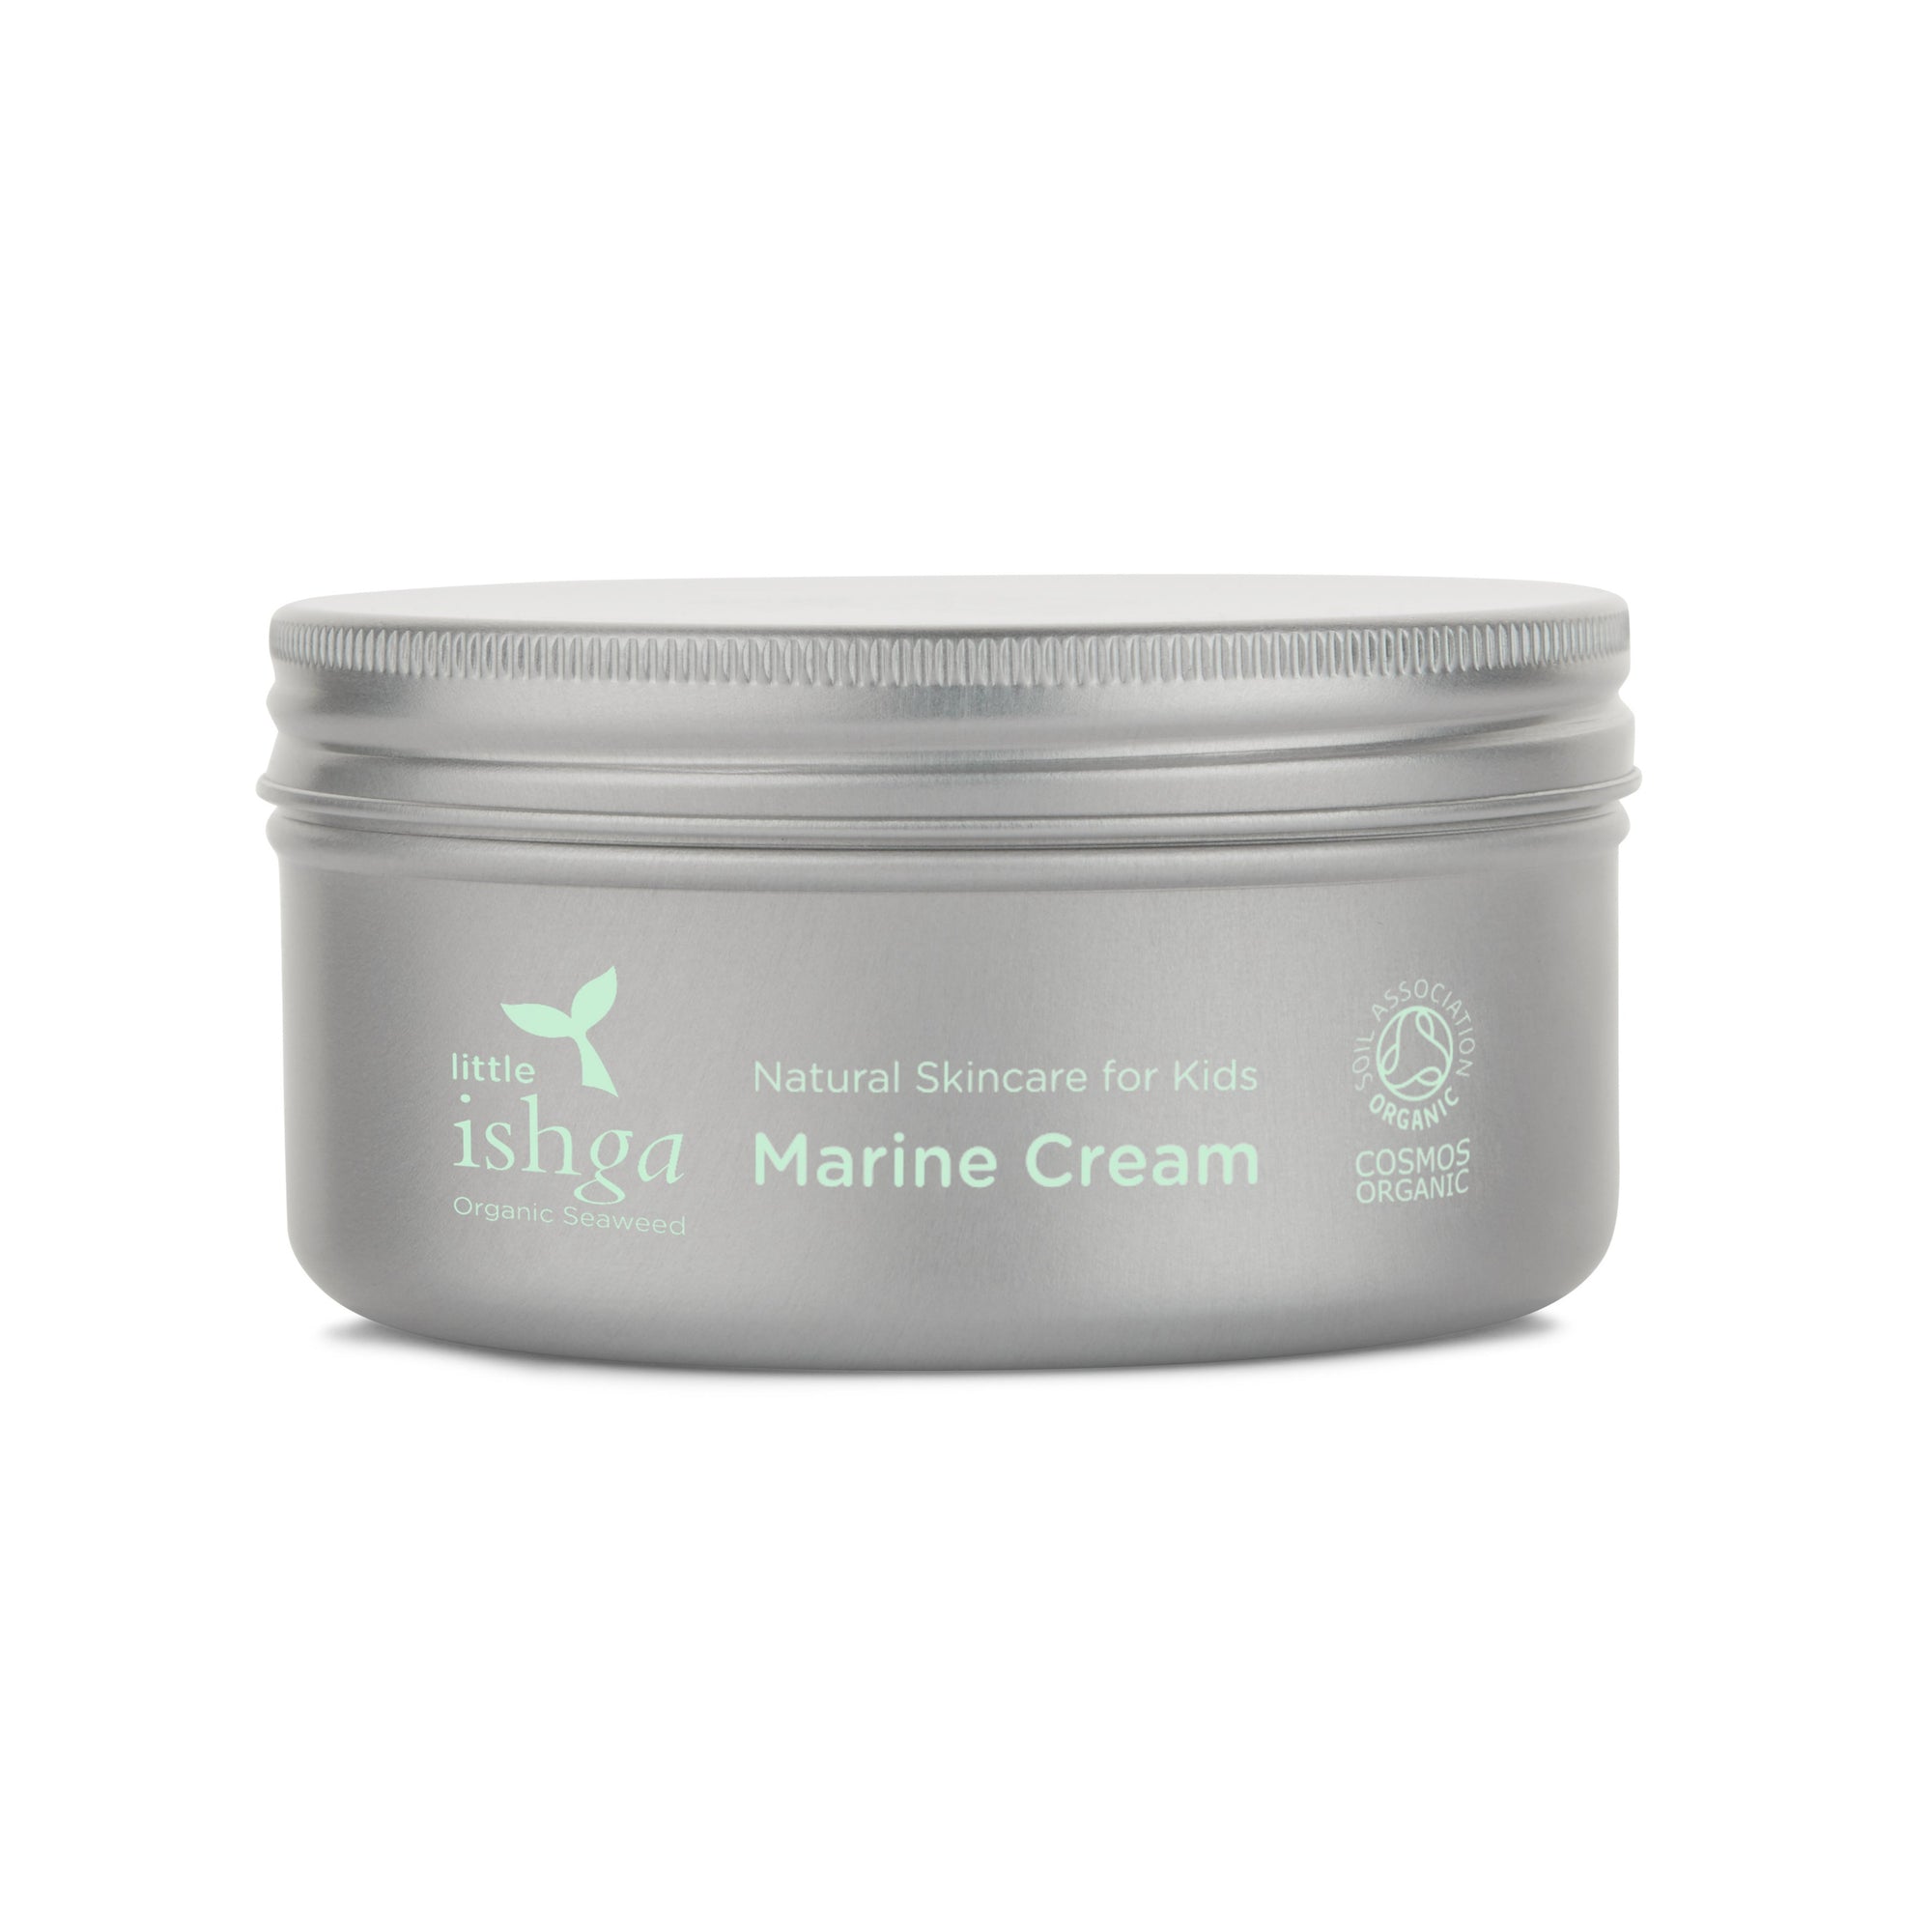 Little ishga Marine Cream moisturiser for kids